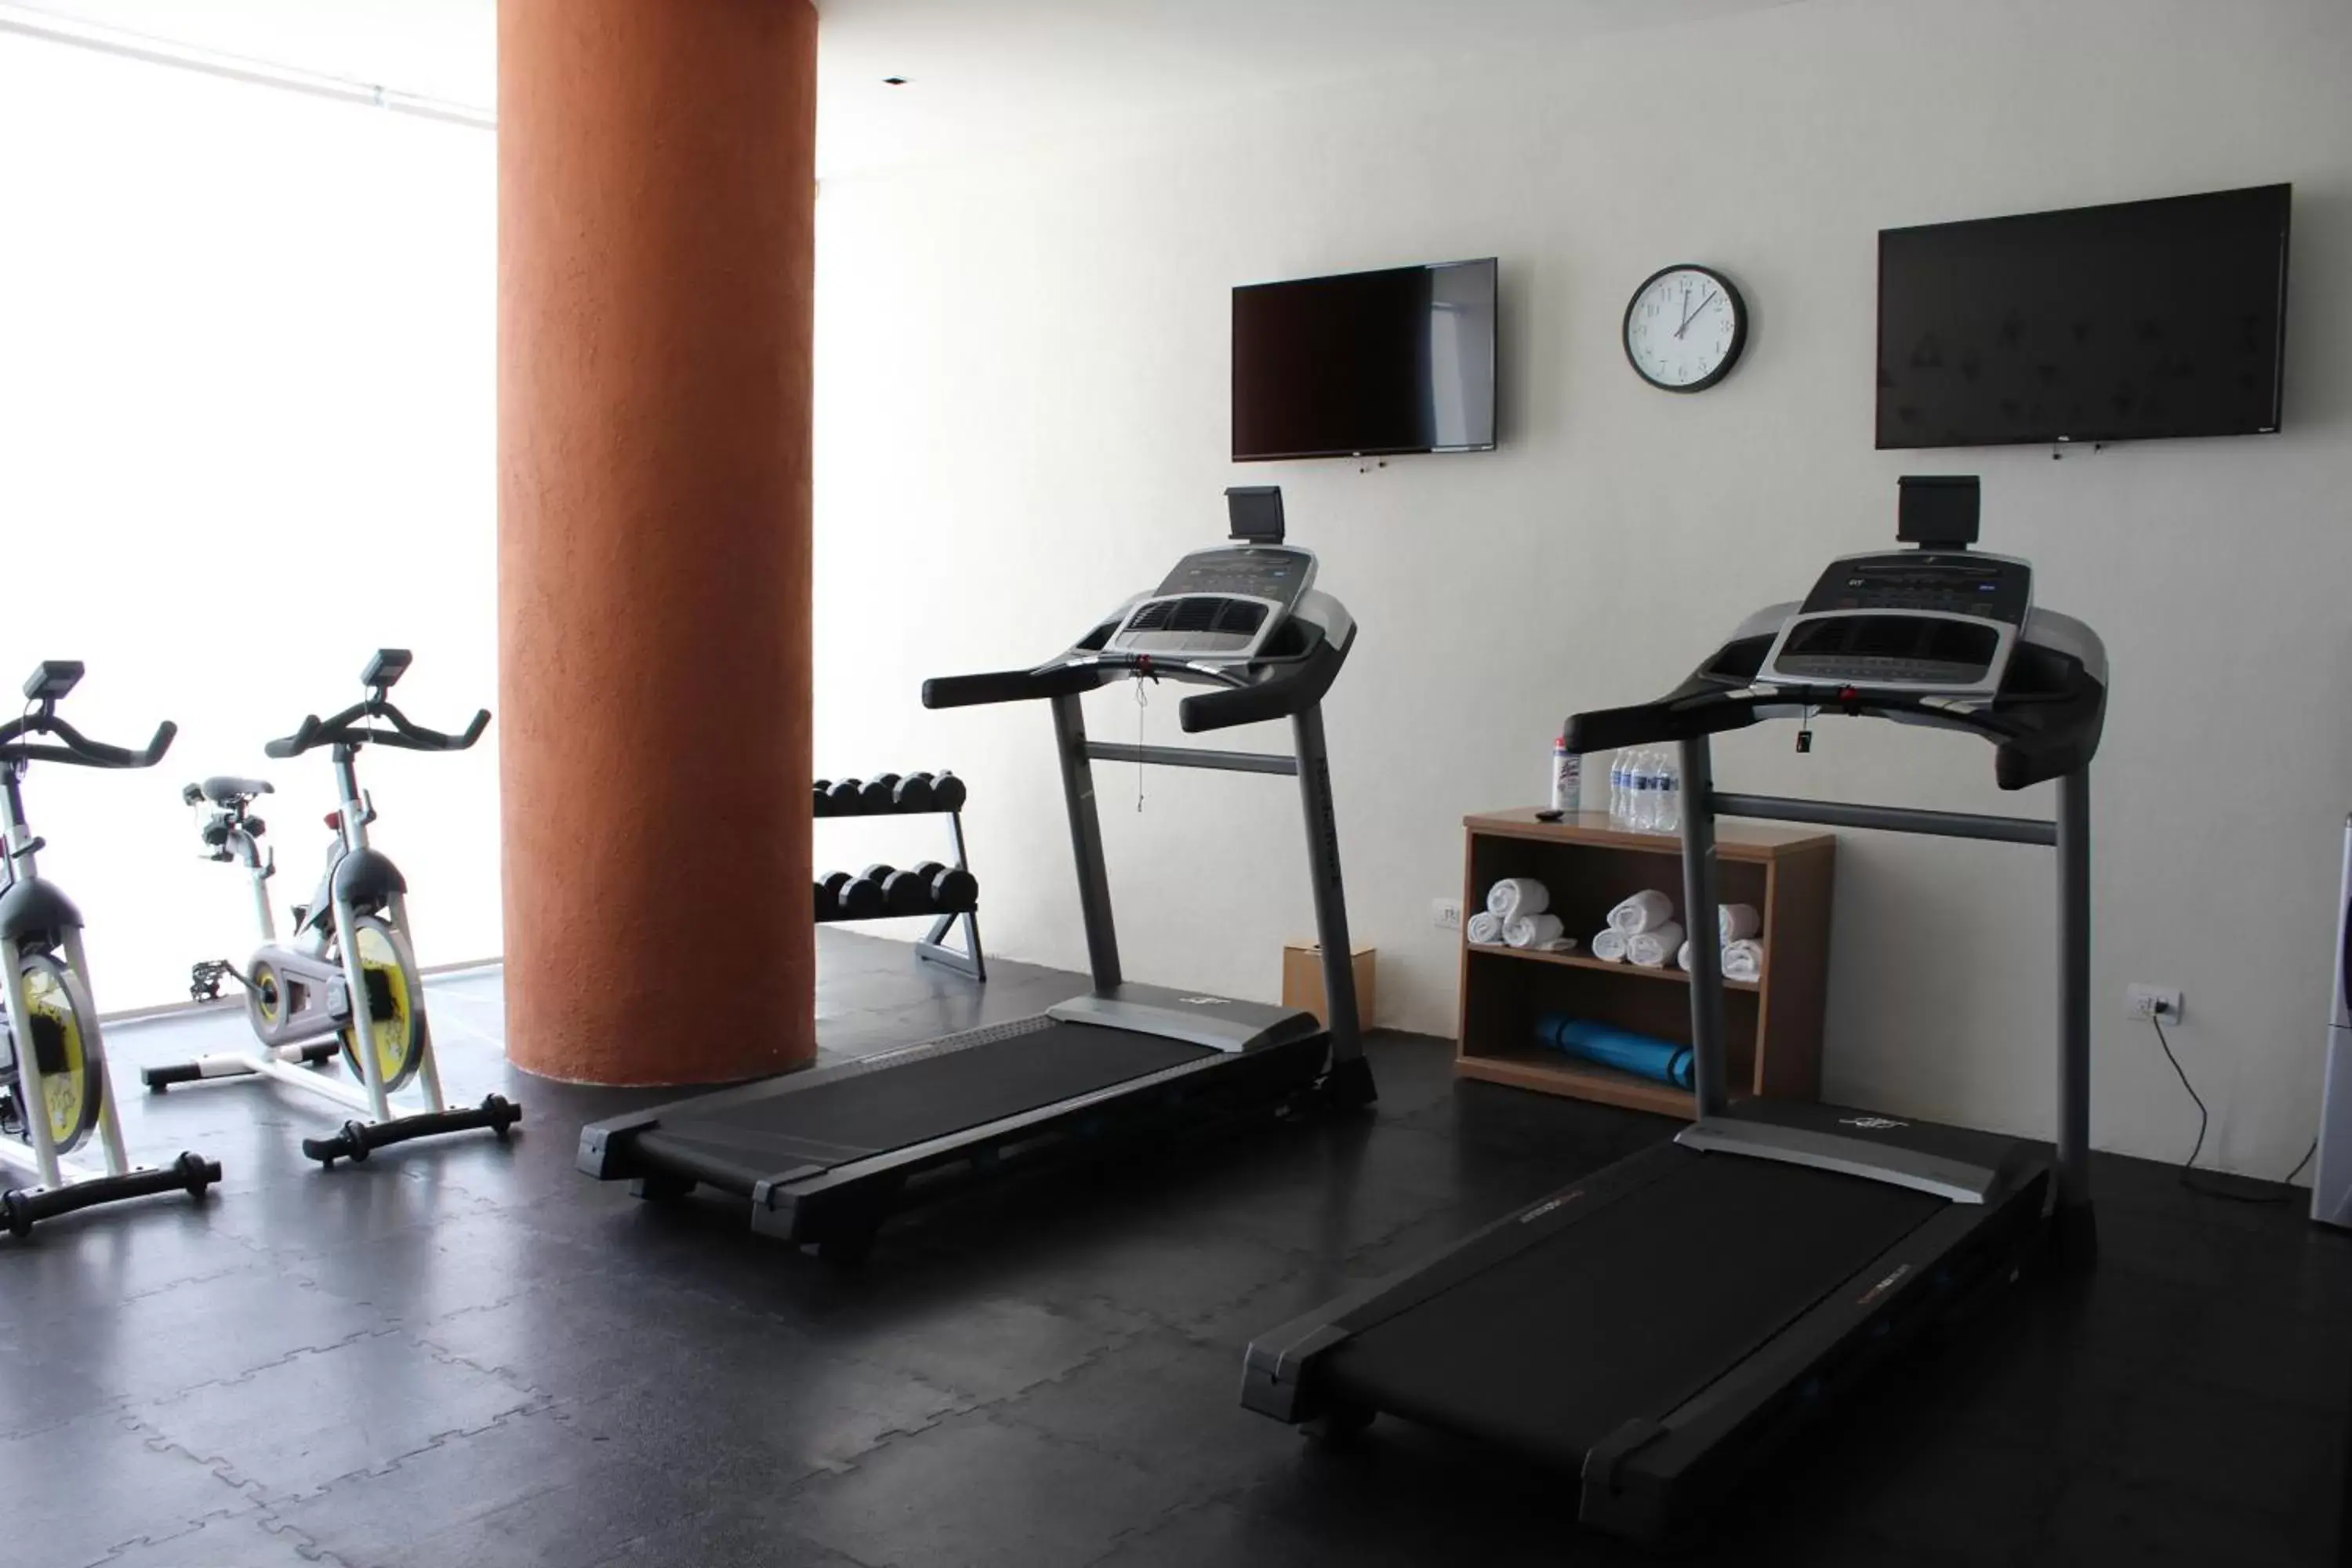 Fitness centre/facilities, Fitness Center/Facilities in Hotel México Plaza Querétaro